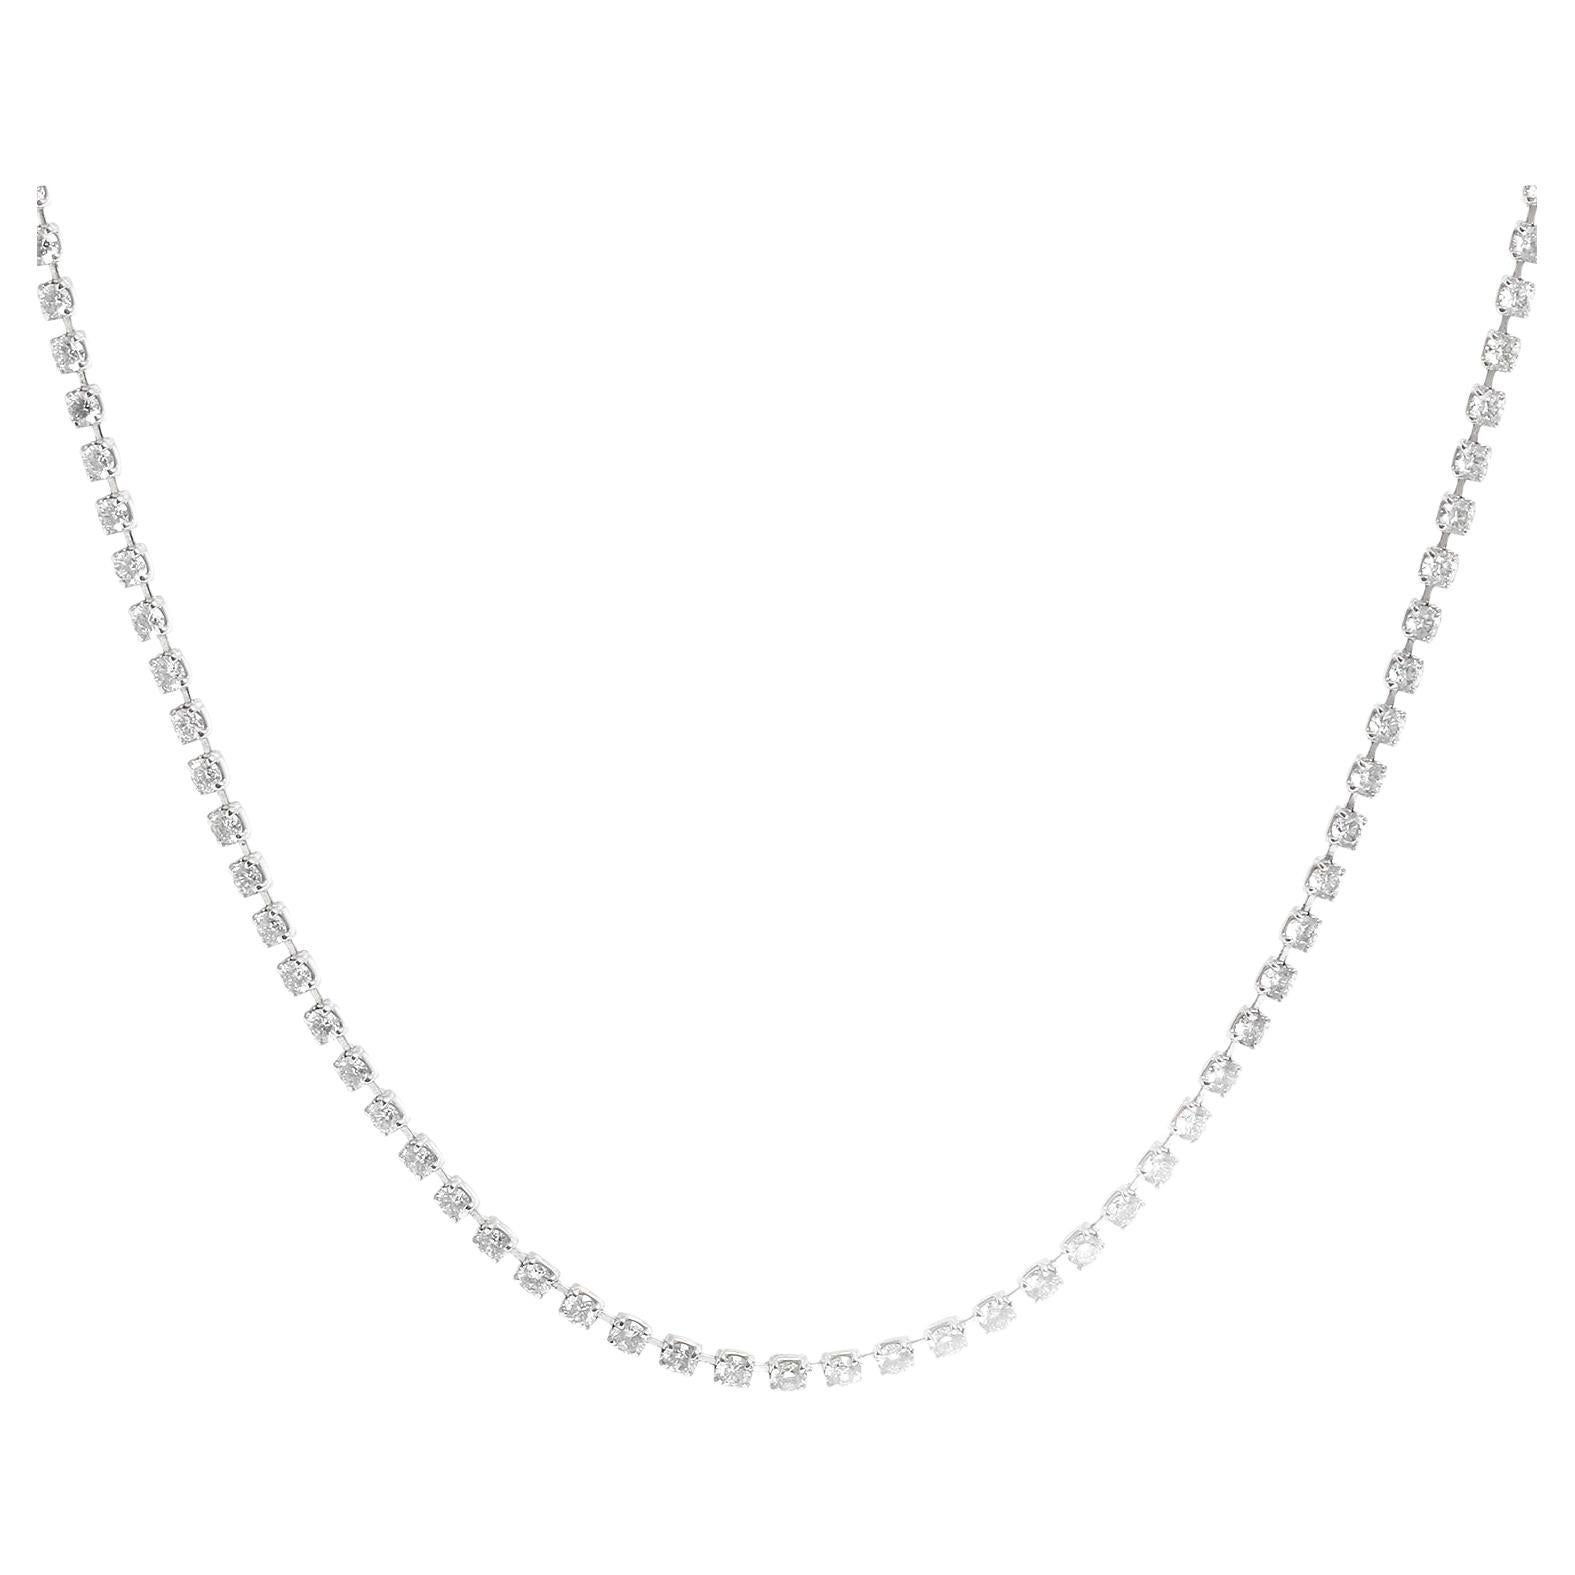 Platinum Tennis Necklace 5.33 carats